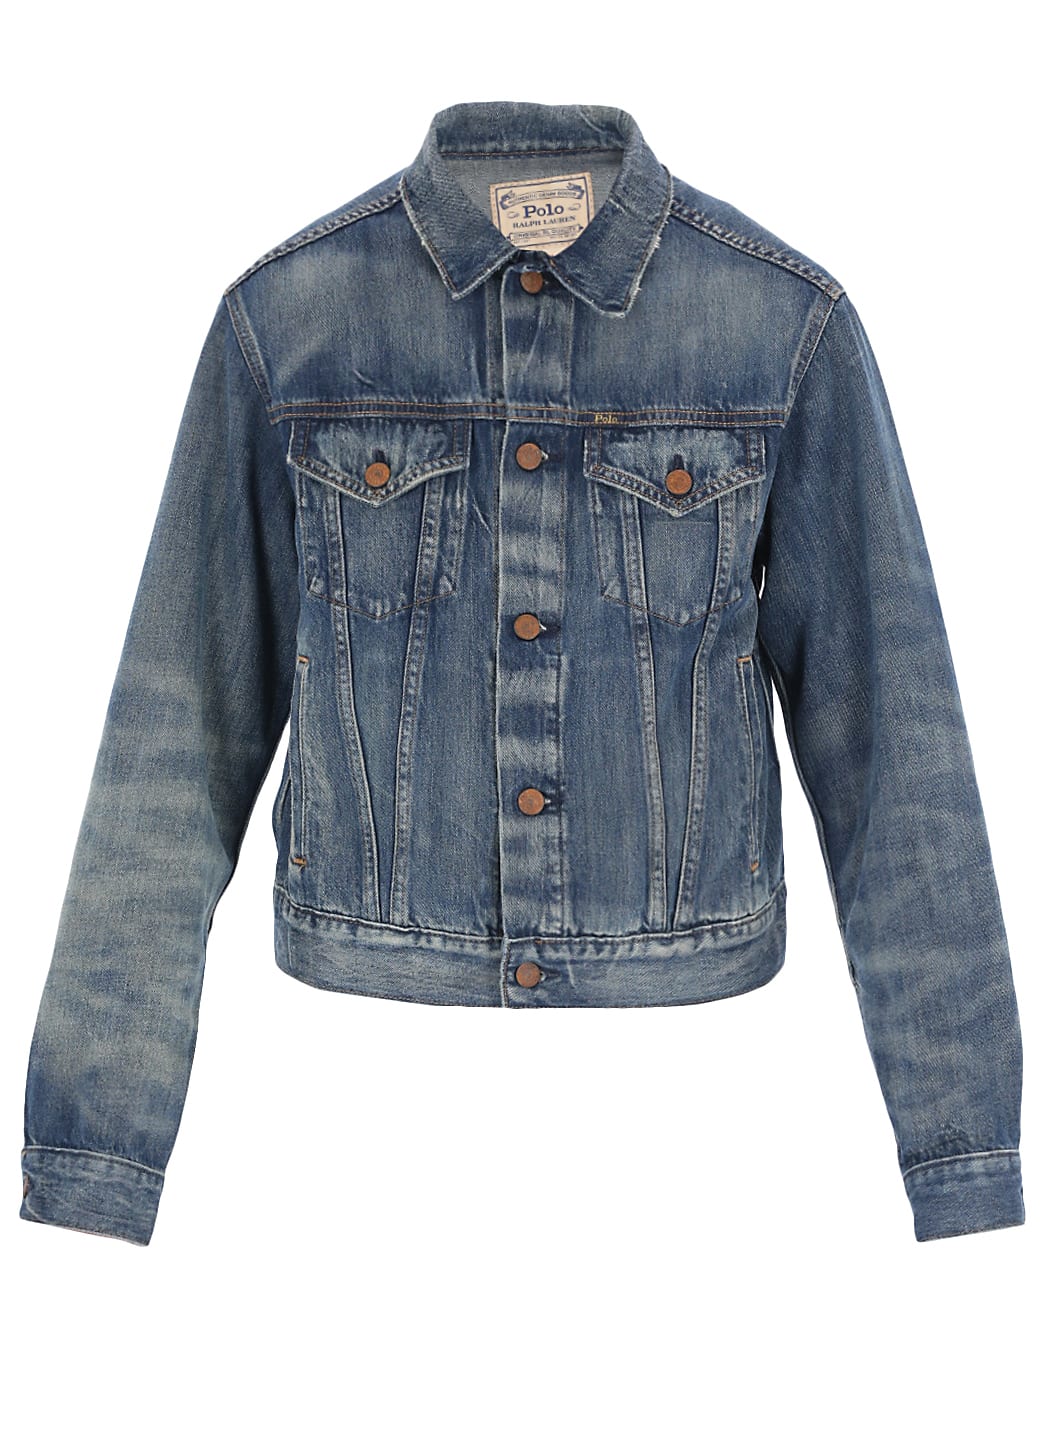 Ralph Lauren Jeans Jacket